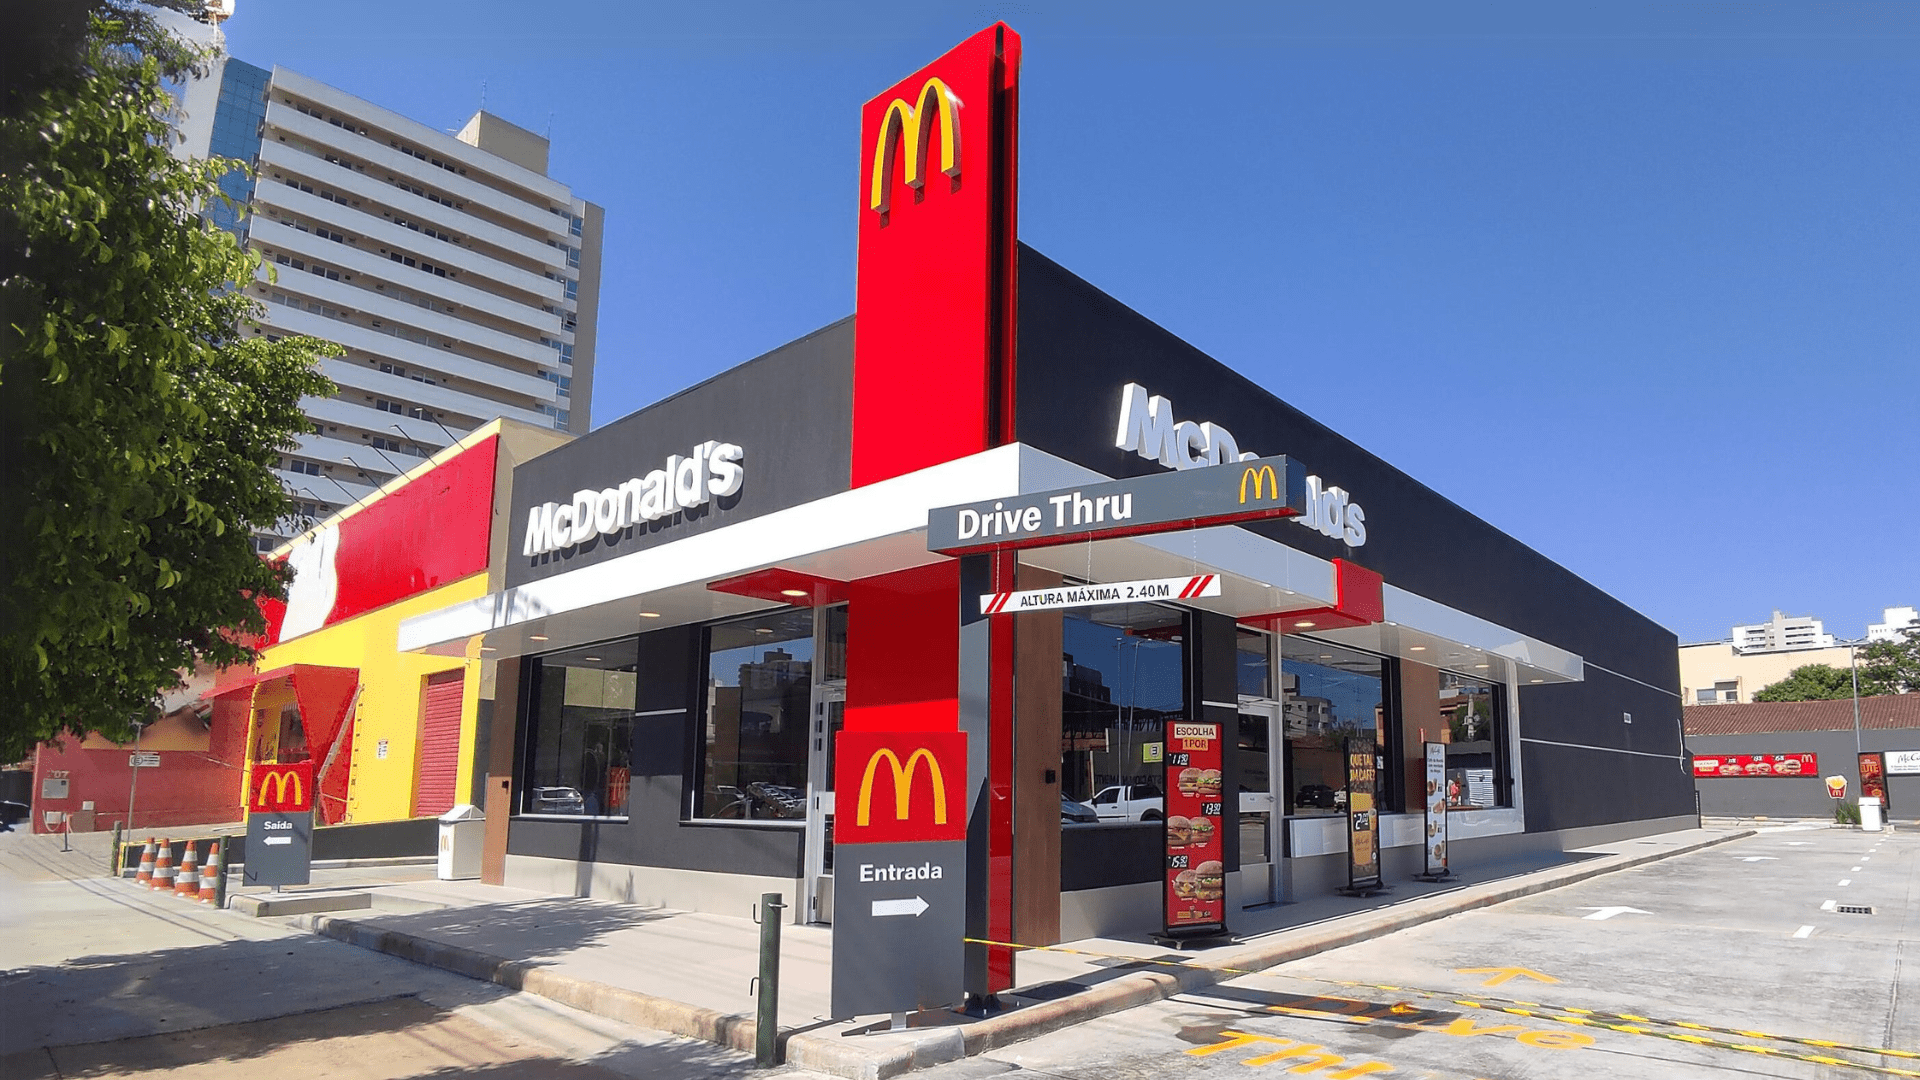 McDonald's abre processo seletivo para preencher mais de 400 vagas de emprego para pessoas com e sem experiência